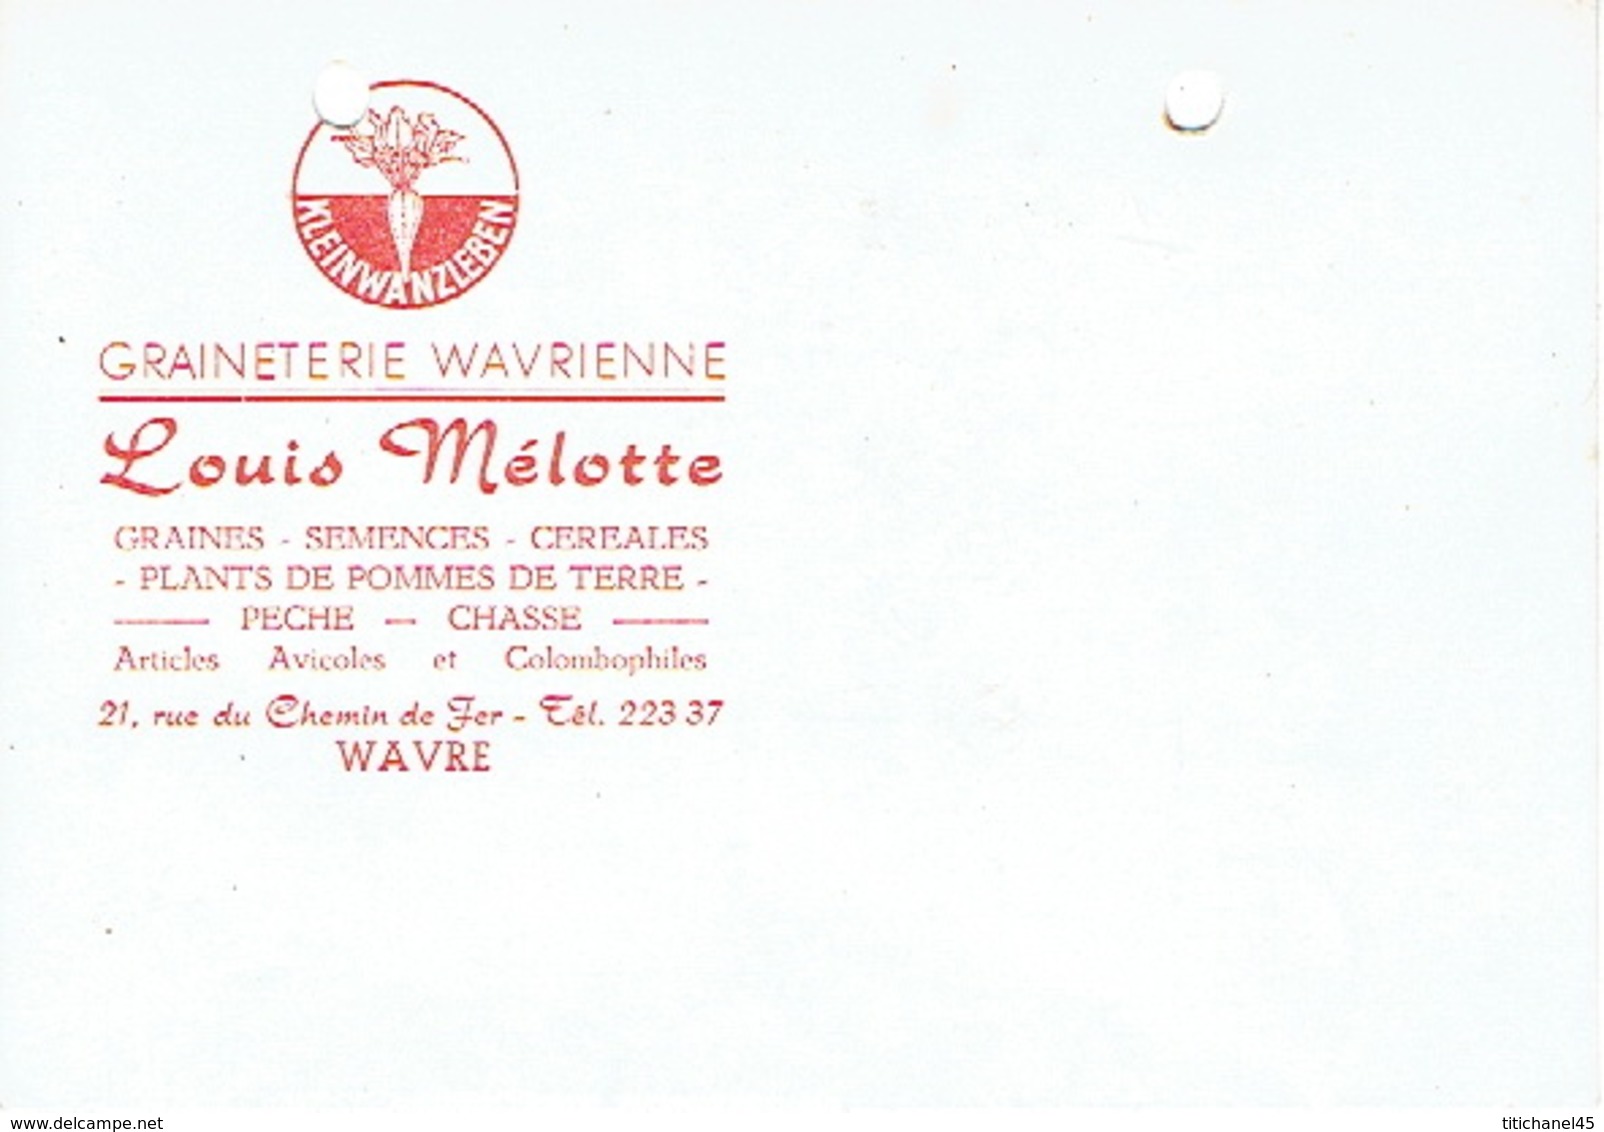 CP Publicitaire WAVRE 1959 - Louis MELOTTE - GRAINETERIE WAVRIENNE - Graines, Semences, Céréales, Pêche, Chasse - Wavre